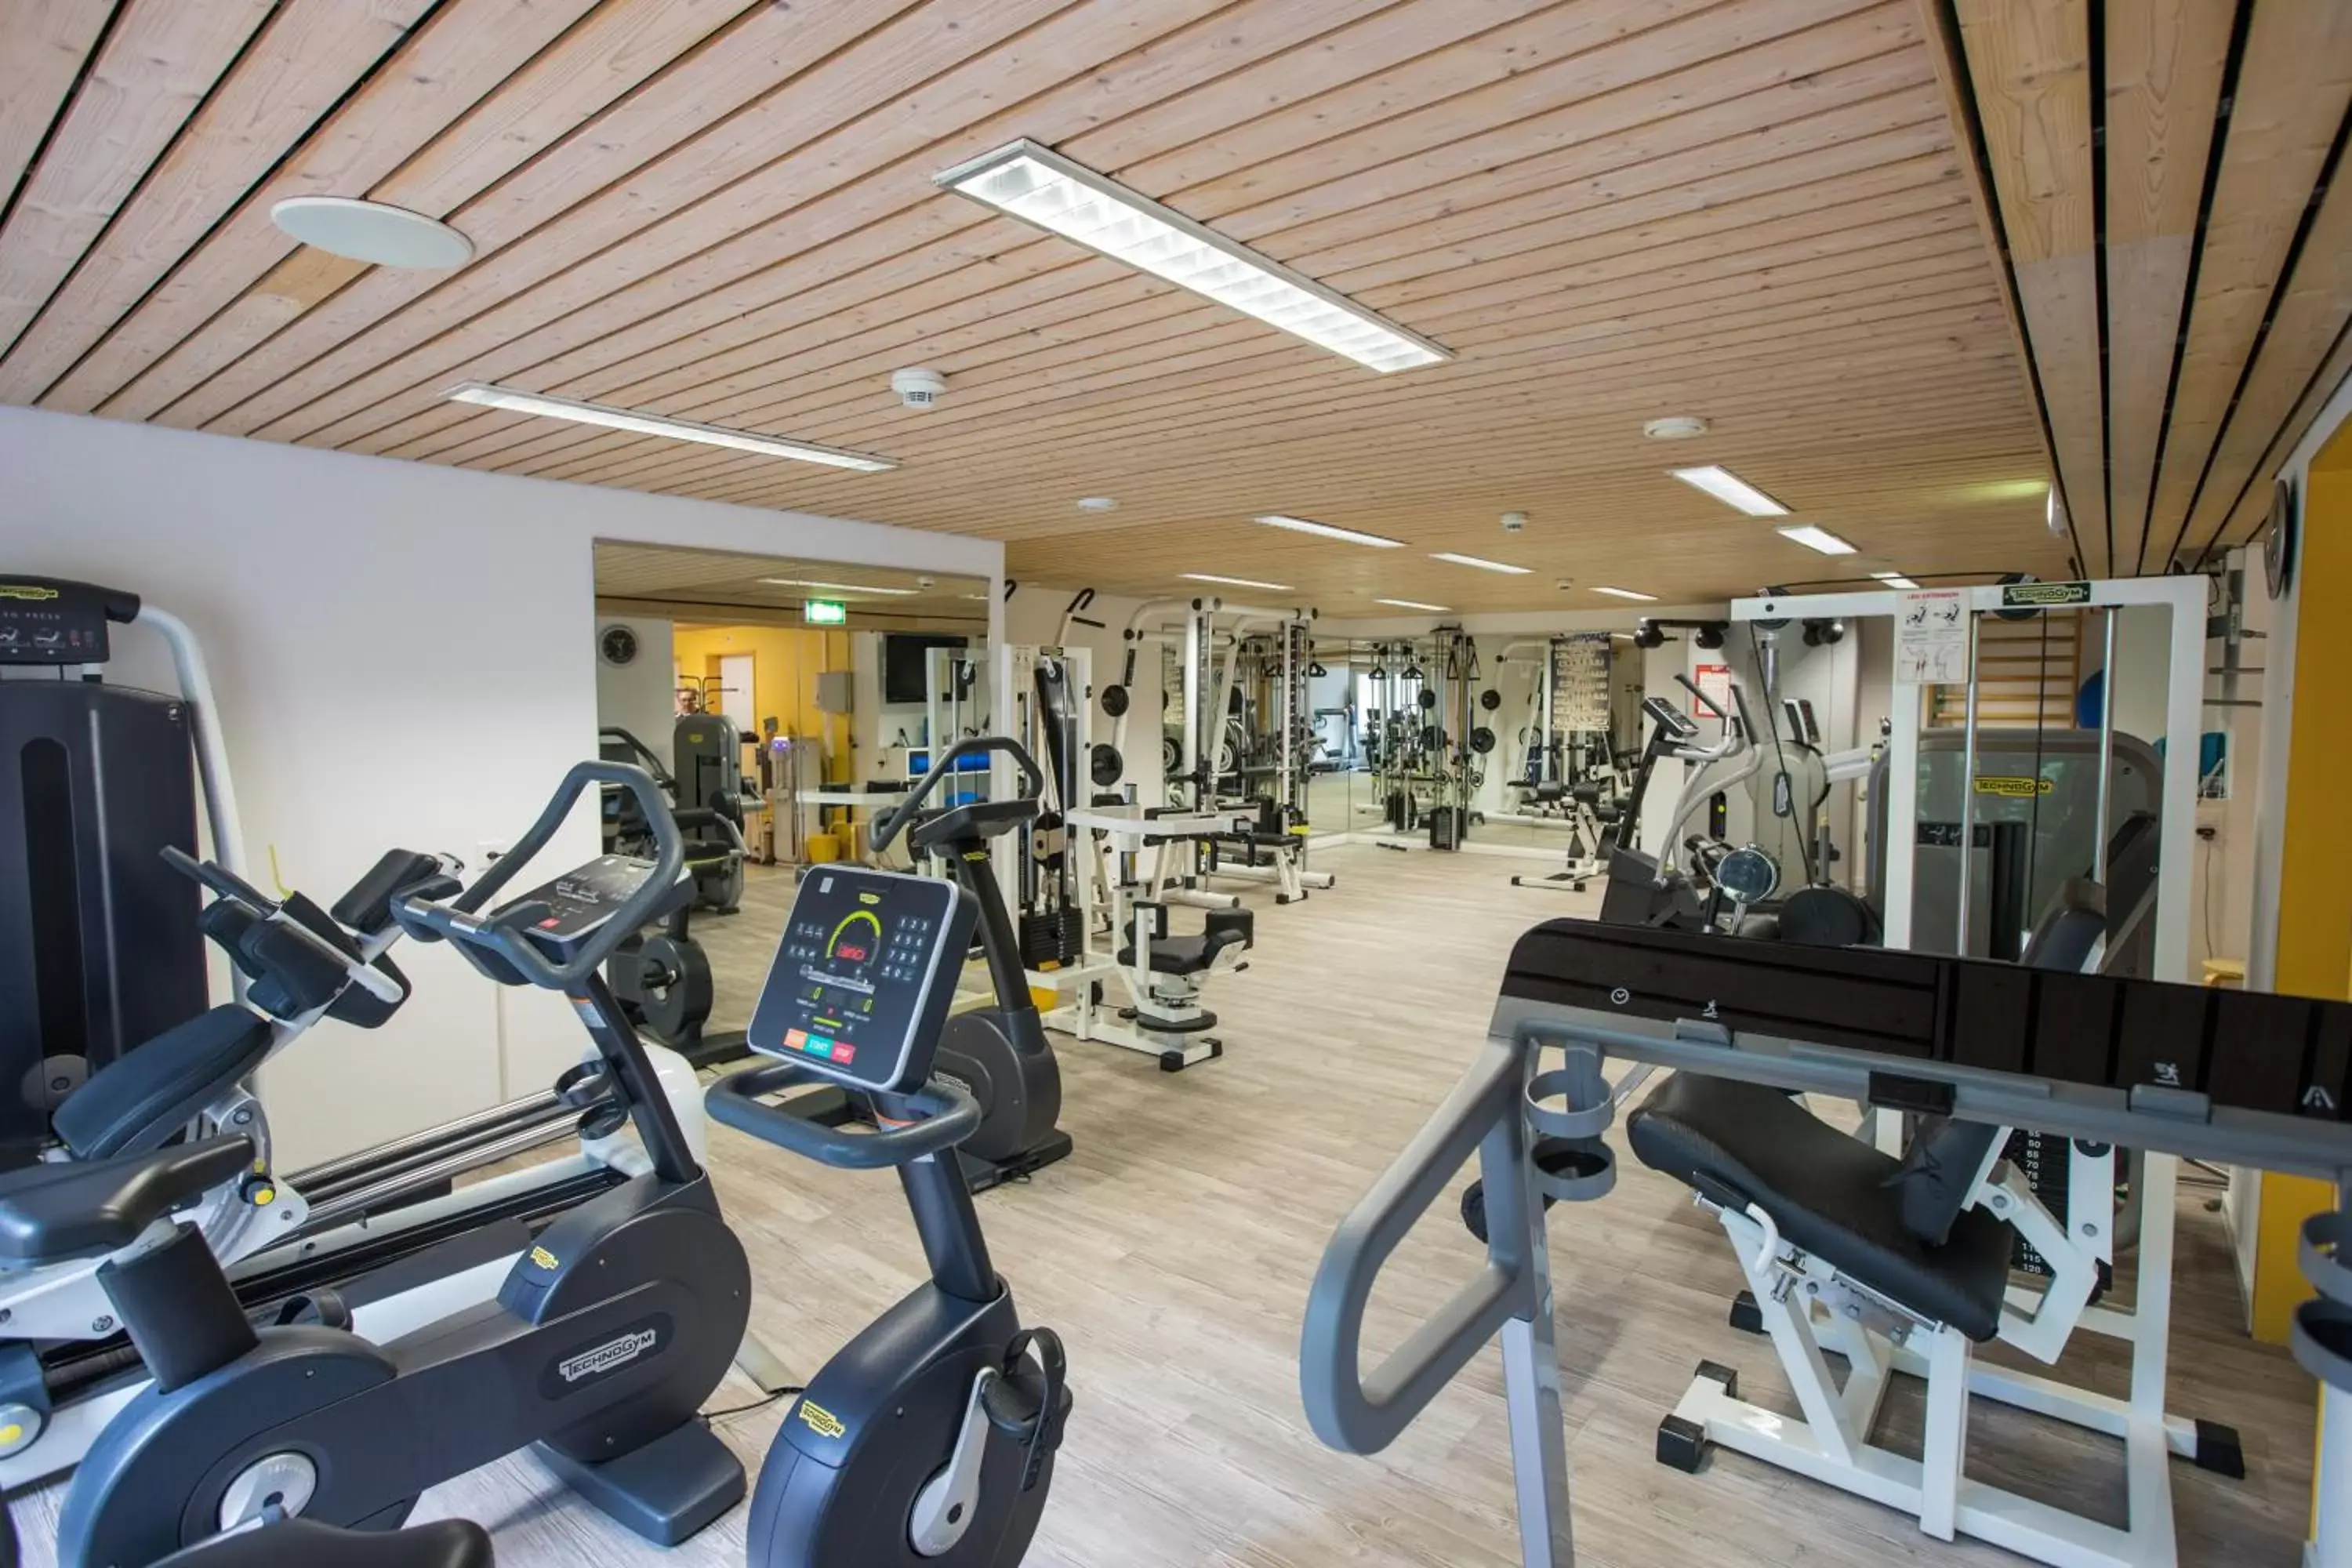 Fitness centre/facilities, Fitness Center/Facilities in Tertianum Residenza Hotel & Ristorante Al Parco